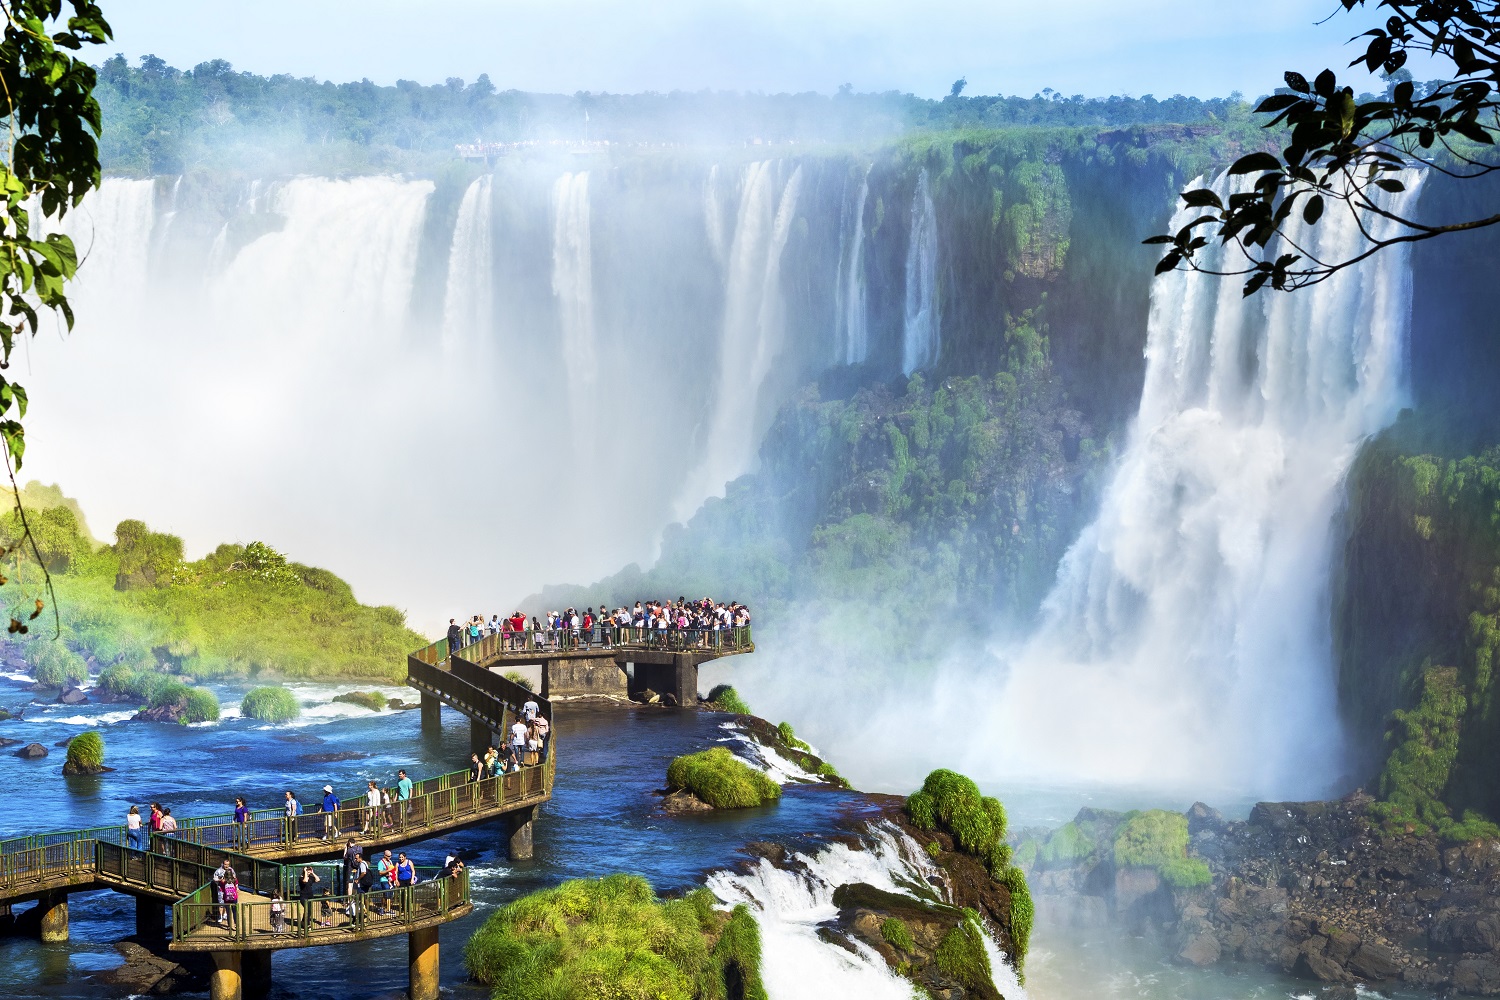 Ecoturismo no Brasil - Foz do Iguaçu - Paraná | Crédito: Shutterstock.com/R.M. Nunes